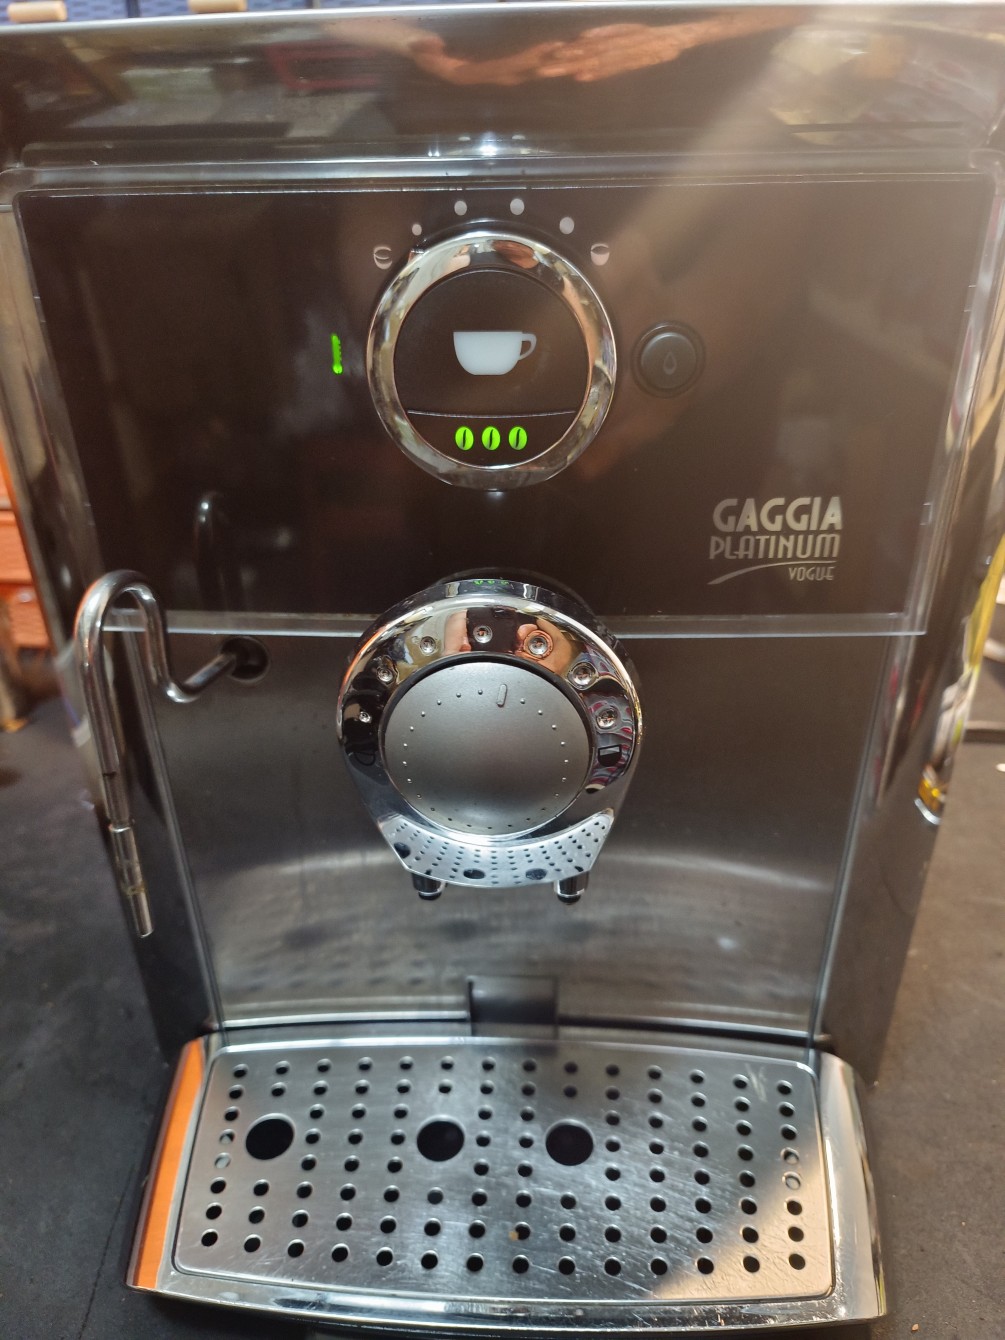 全自動咖啡機-gaggla-saeco-villa-trevl-中古機器整新零件更新定位處理